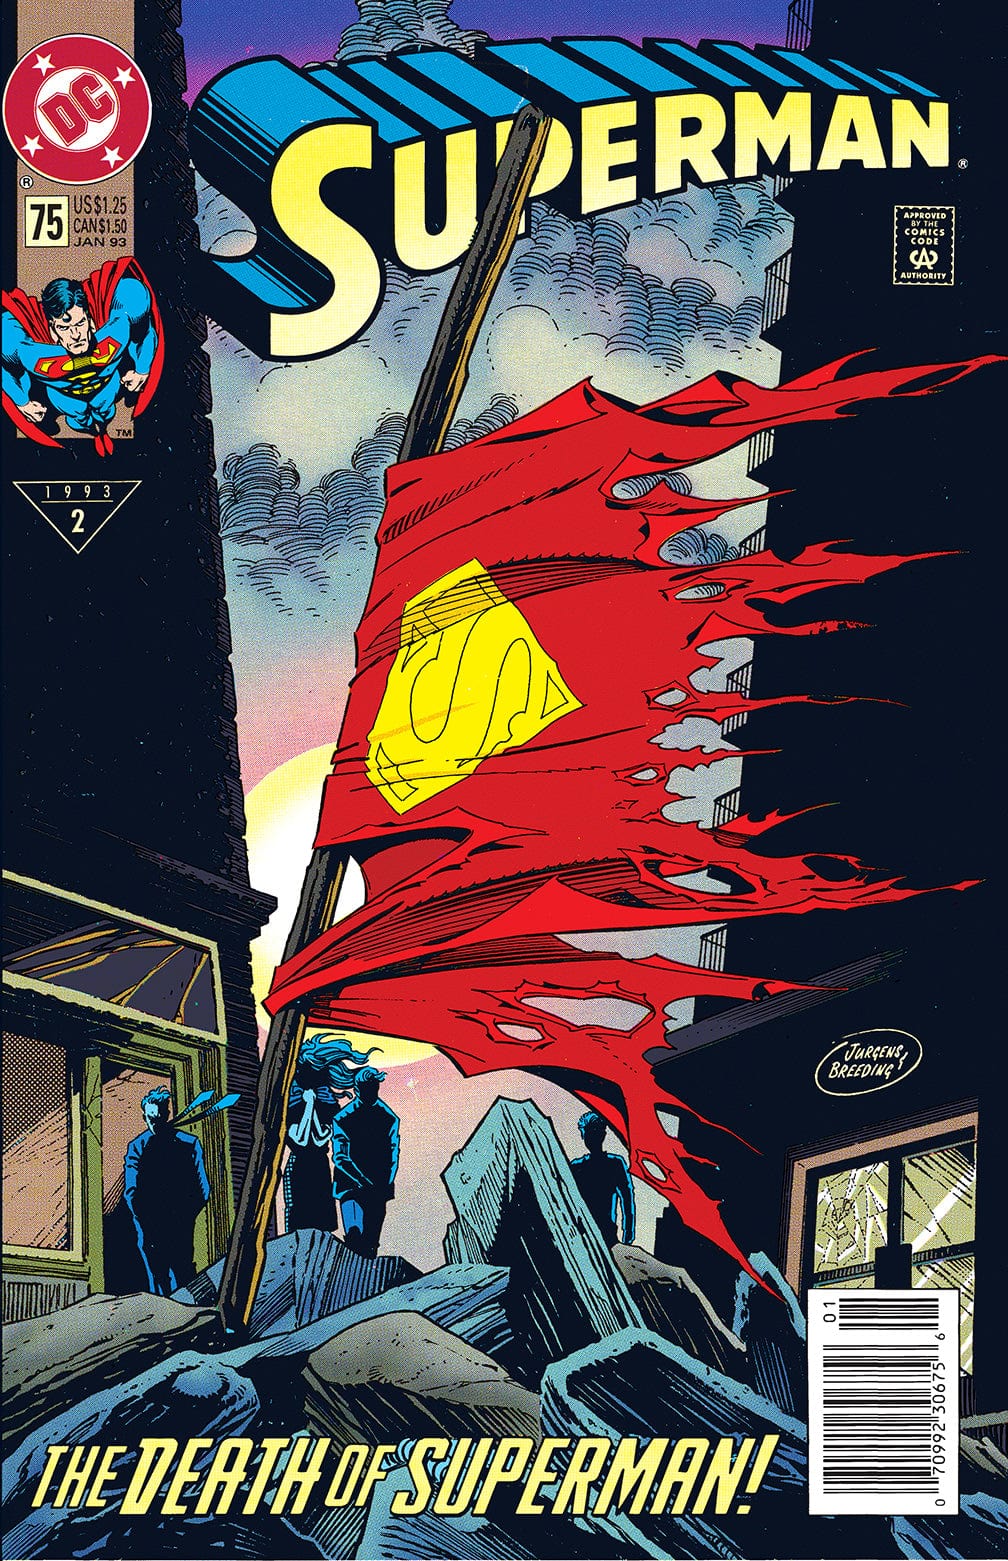 SUPERMAN #75 SPECIAL EDITION CVR A DAN JURGENS - Third Eye